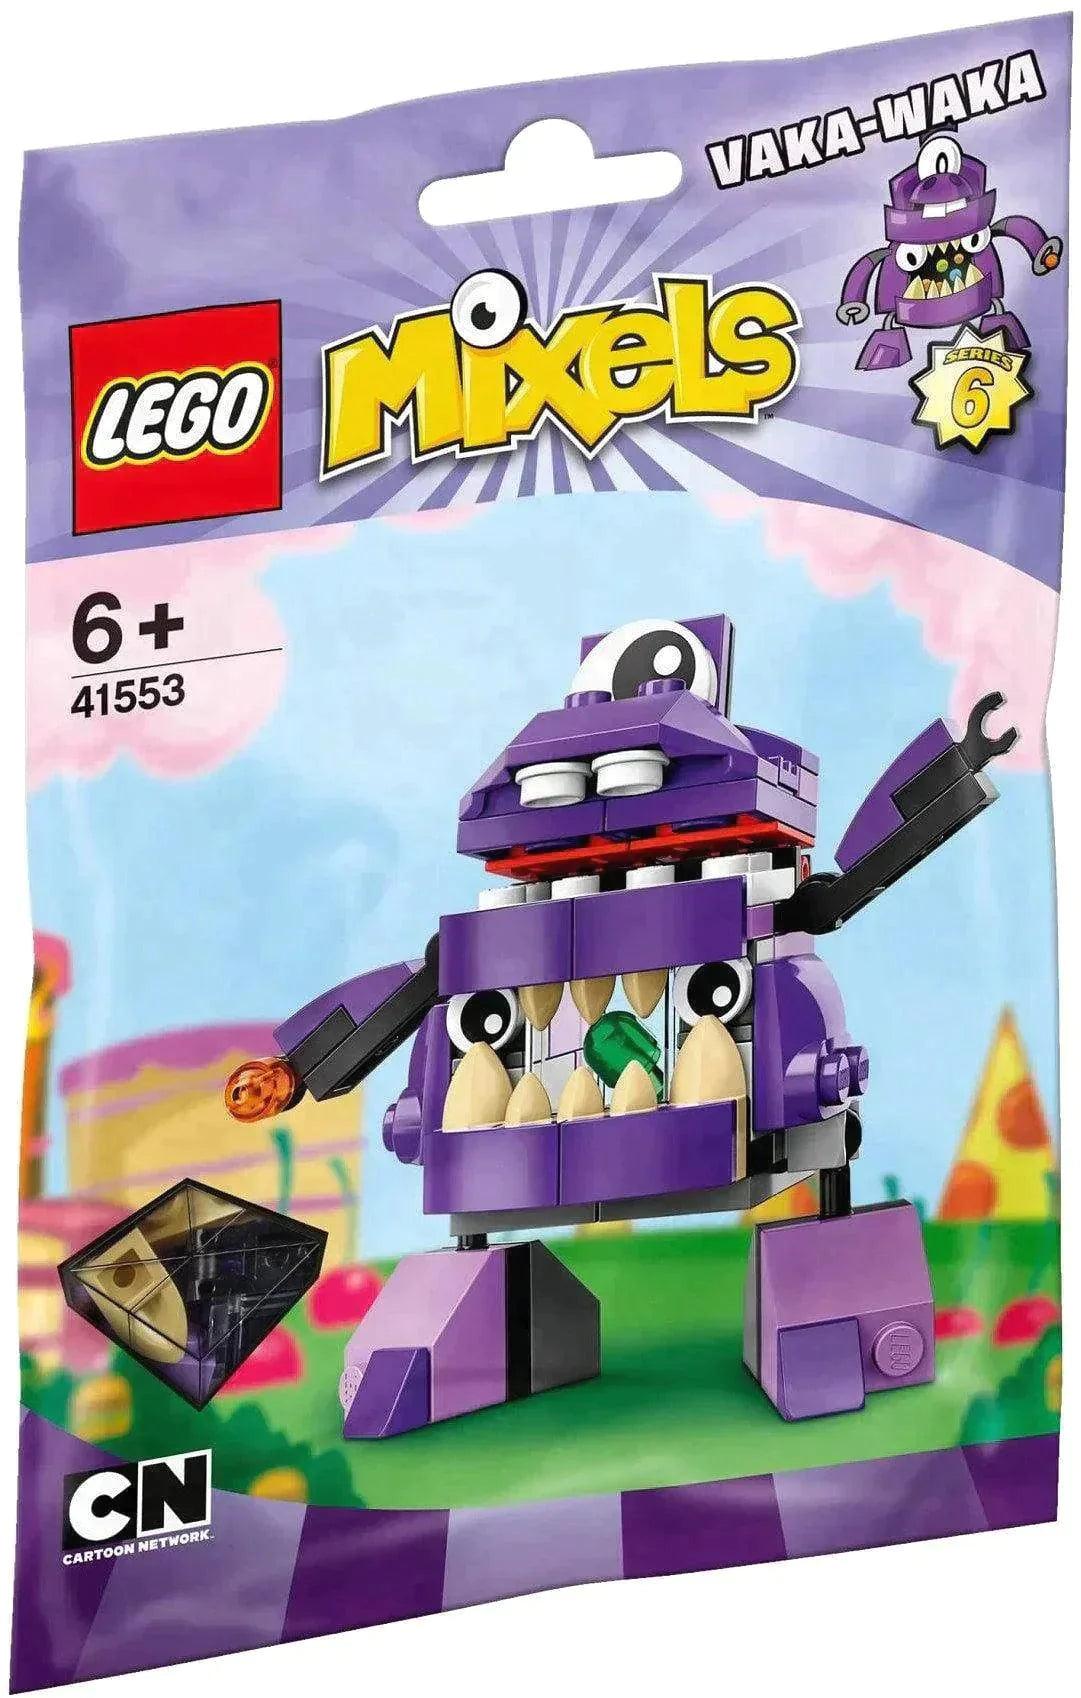 LEGO Mixels Vaka Waka serie 6 41553 Mixels LEGO MIXELS @ 2TTOYS LEGO €. 14.99